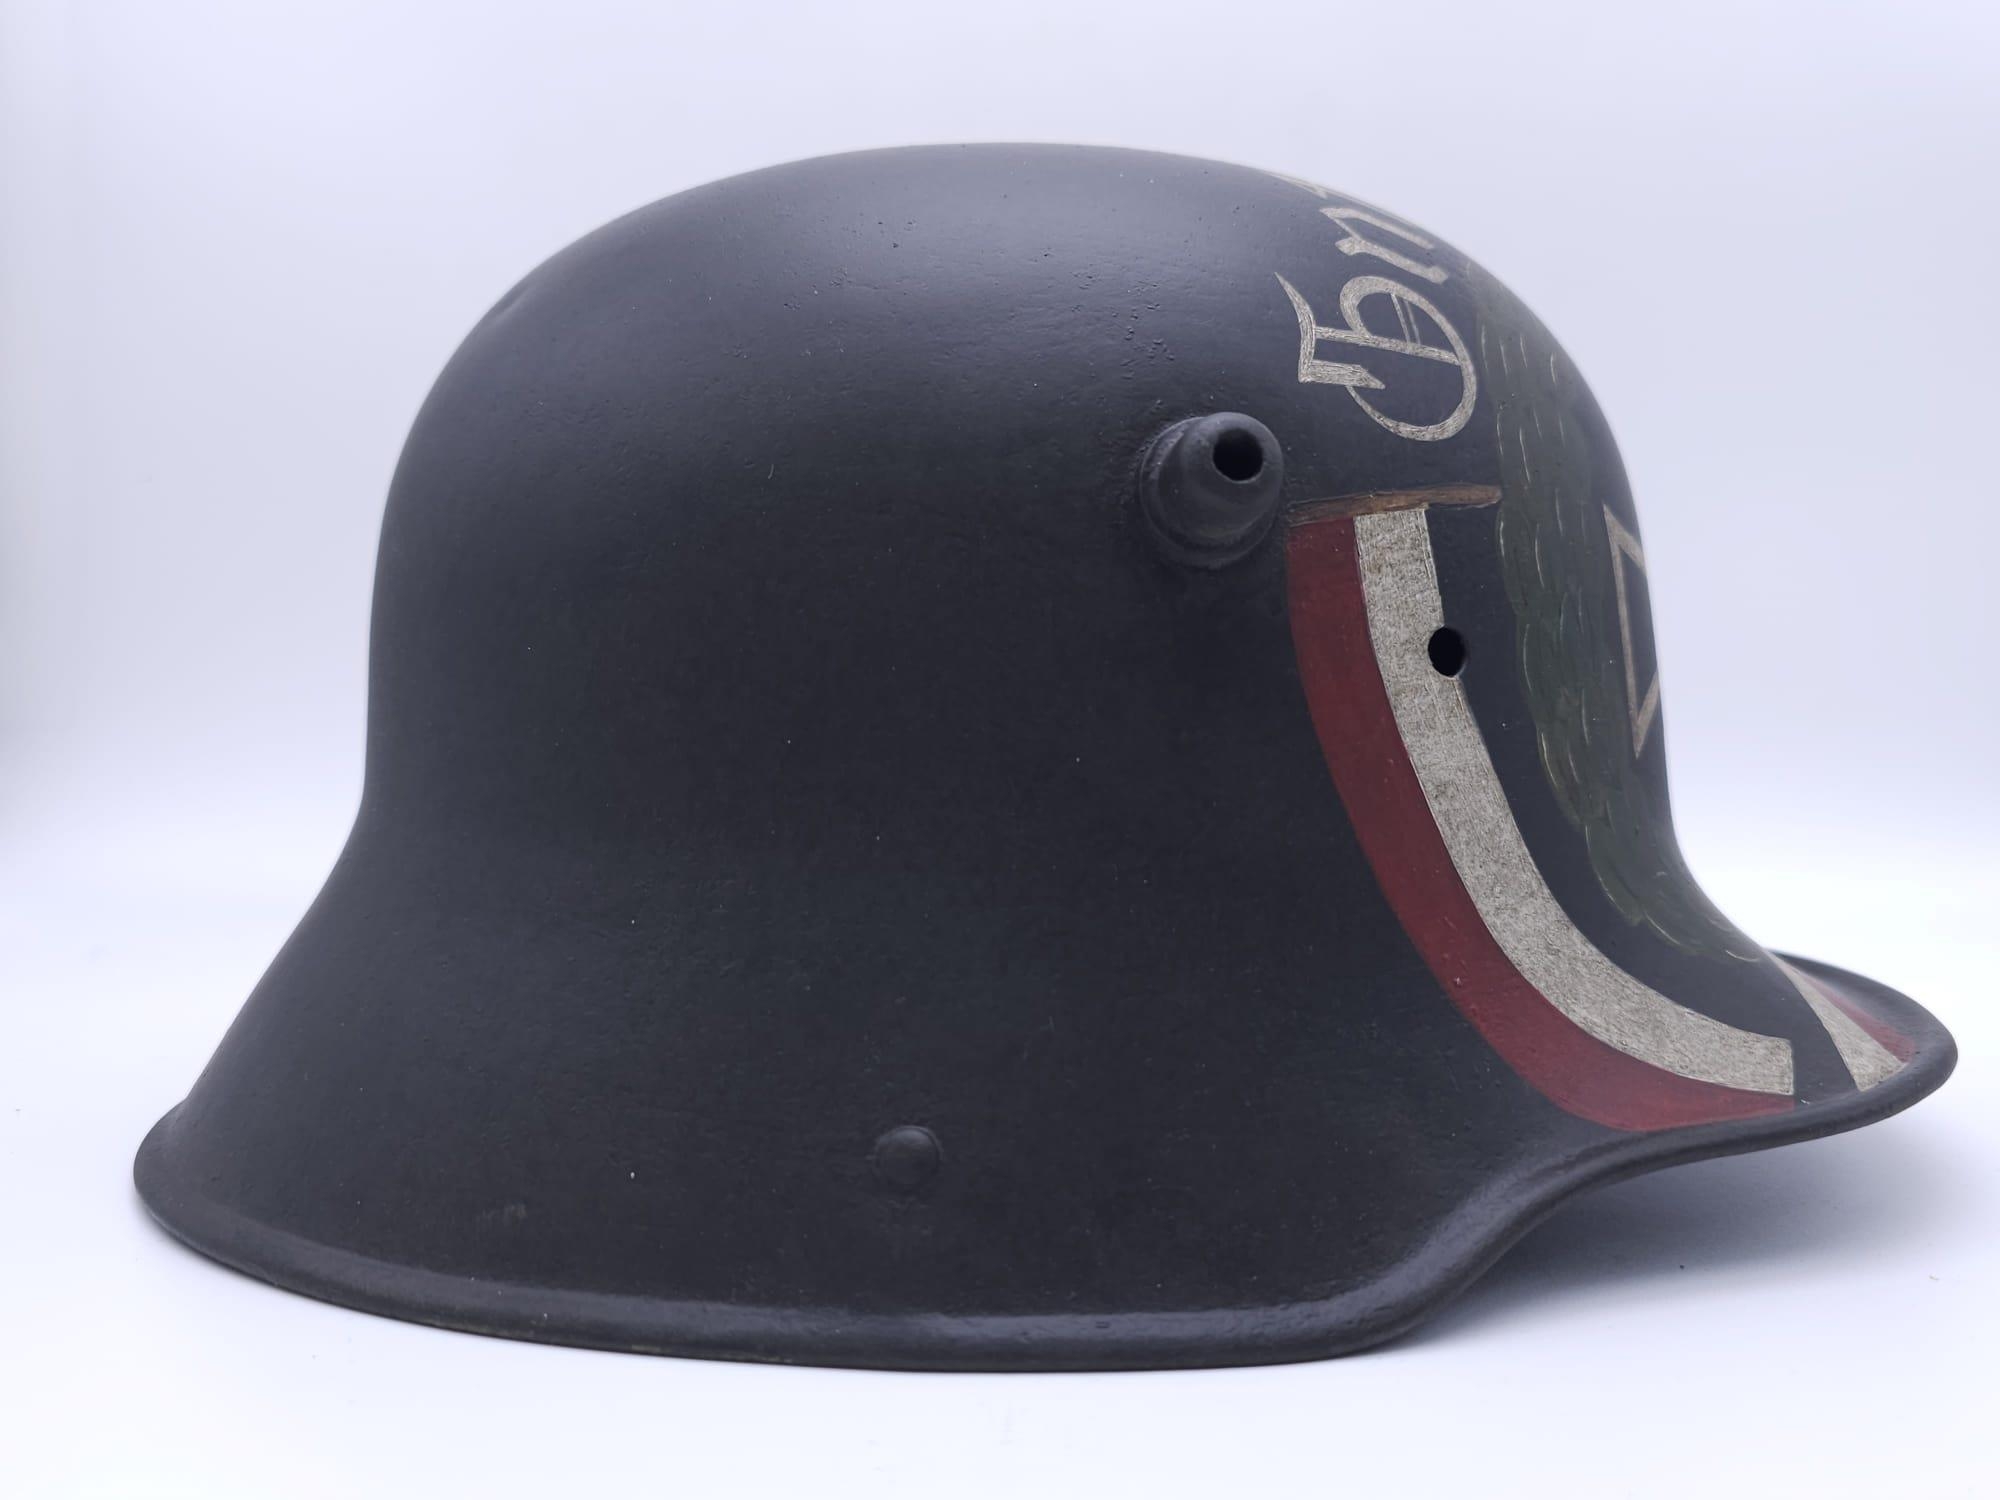 WW1 German Memorial Helmet. Original WW1 German Stahlhelm helmet with post ..War memorial painting. - Image 6 of 7